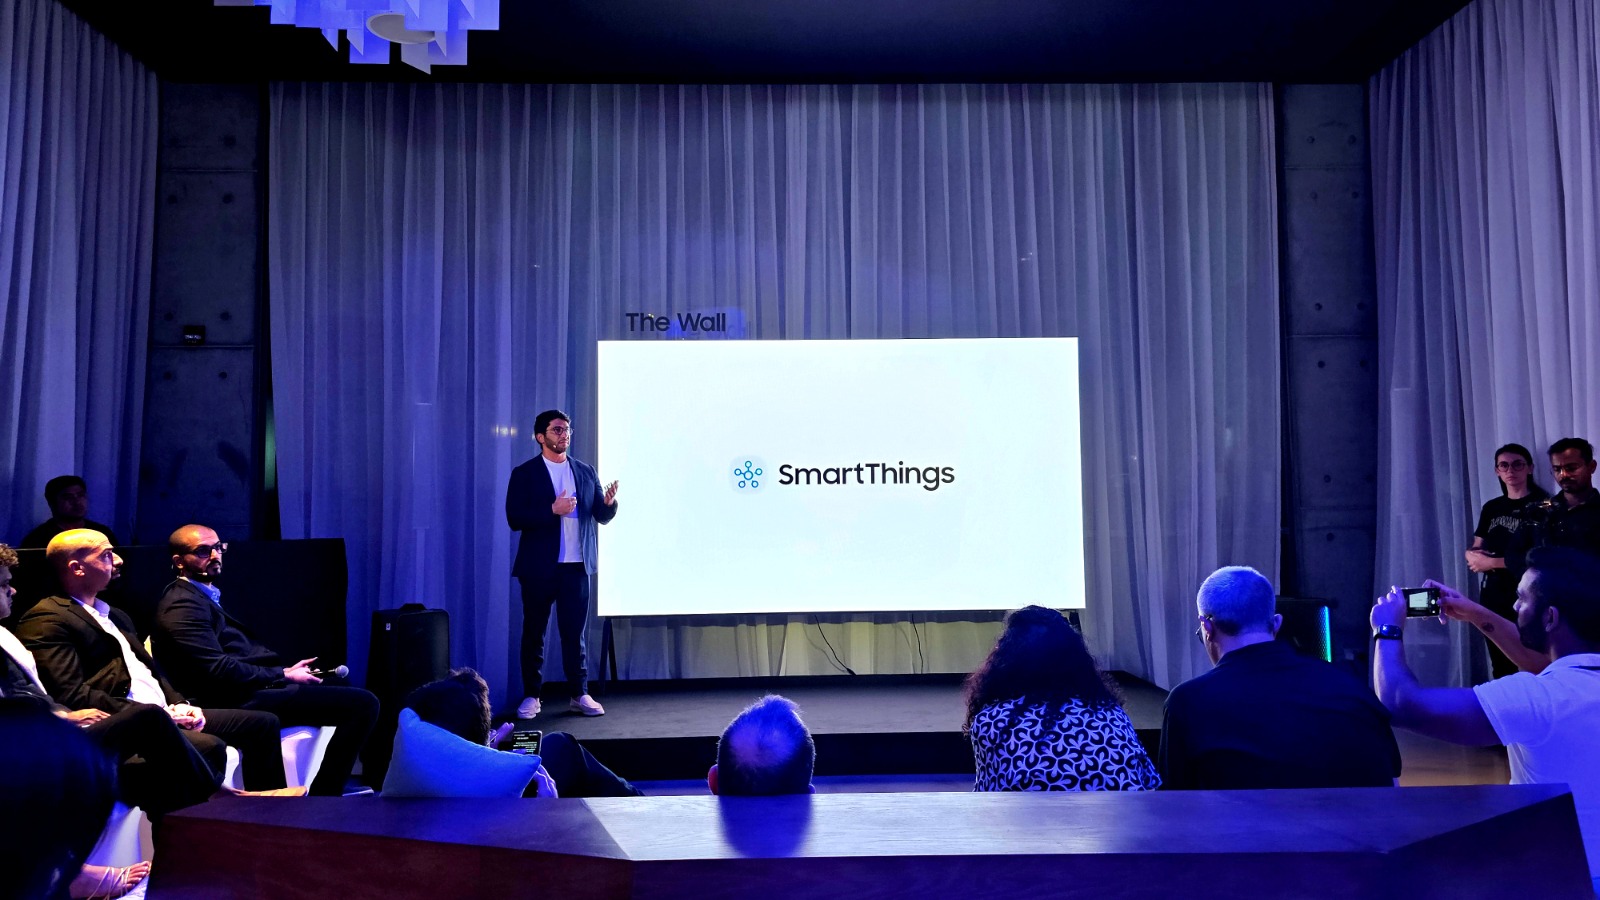  سامسونج تعزز تجربة المنزل المتصل عبر تقنية SmartThings وبالتعاون مع شركاء إقليميين في مجال المنازل الذكية 